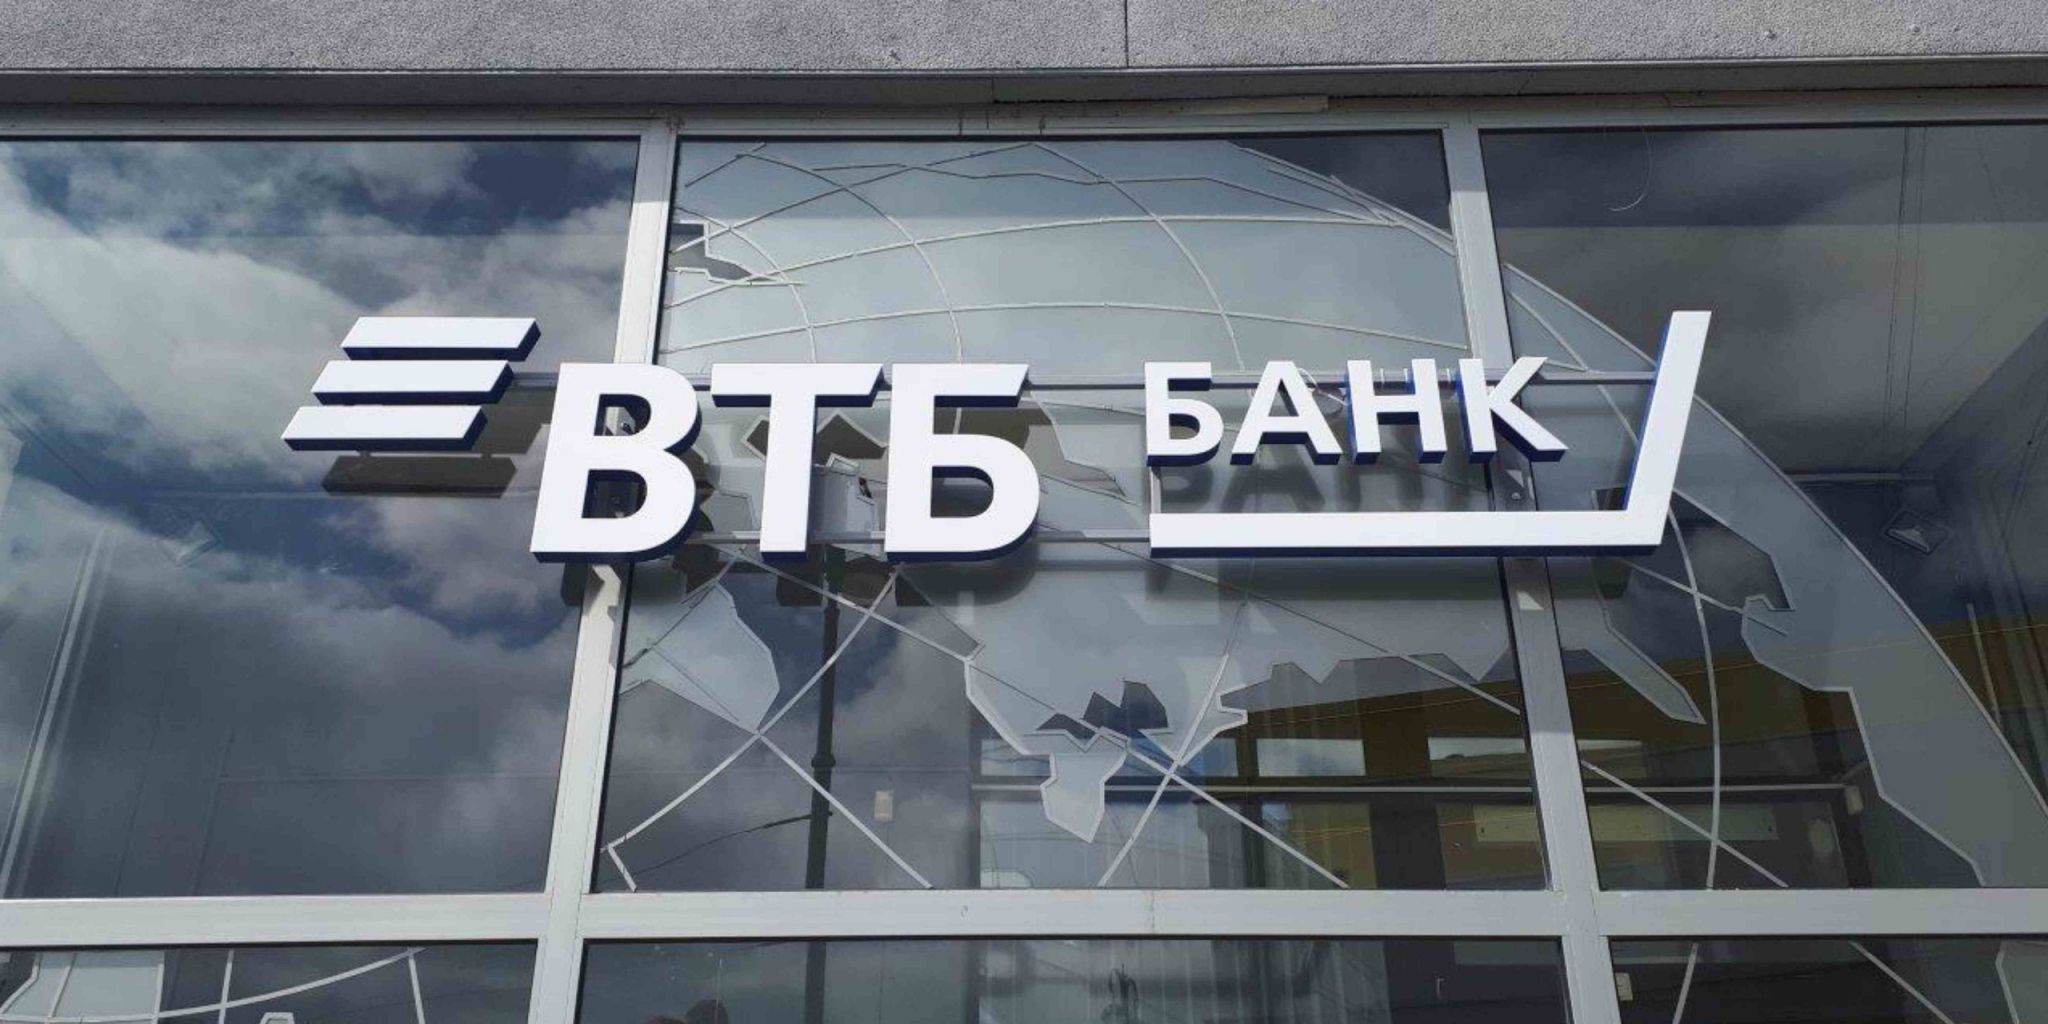 ВТБ: «Мошенники обещают россиянам «выплаты» за трудовой стаж»